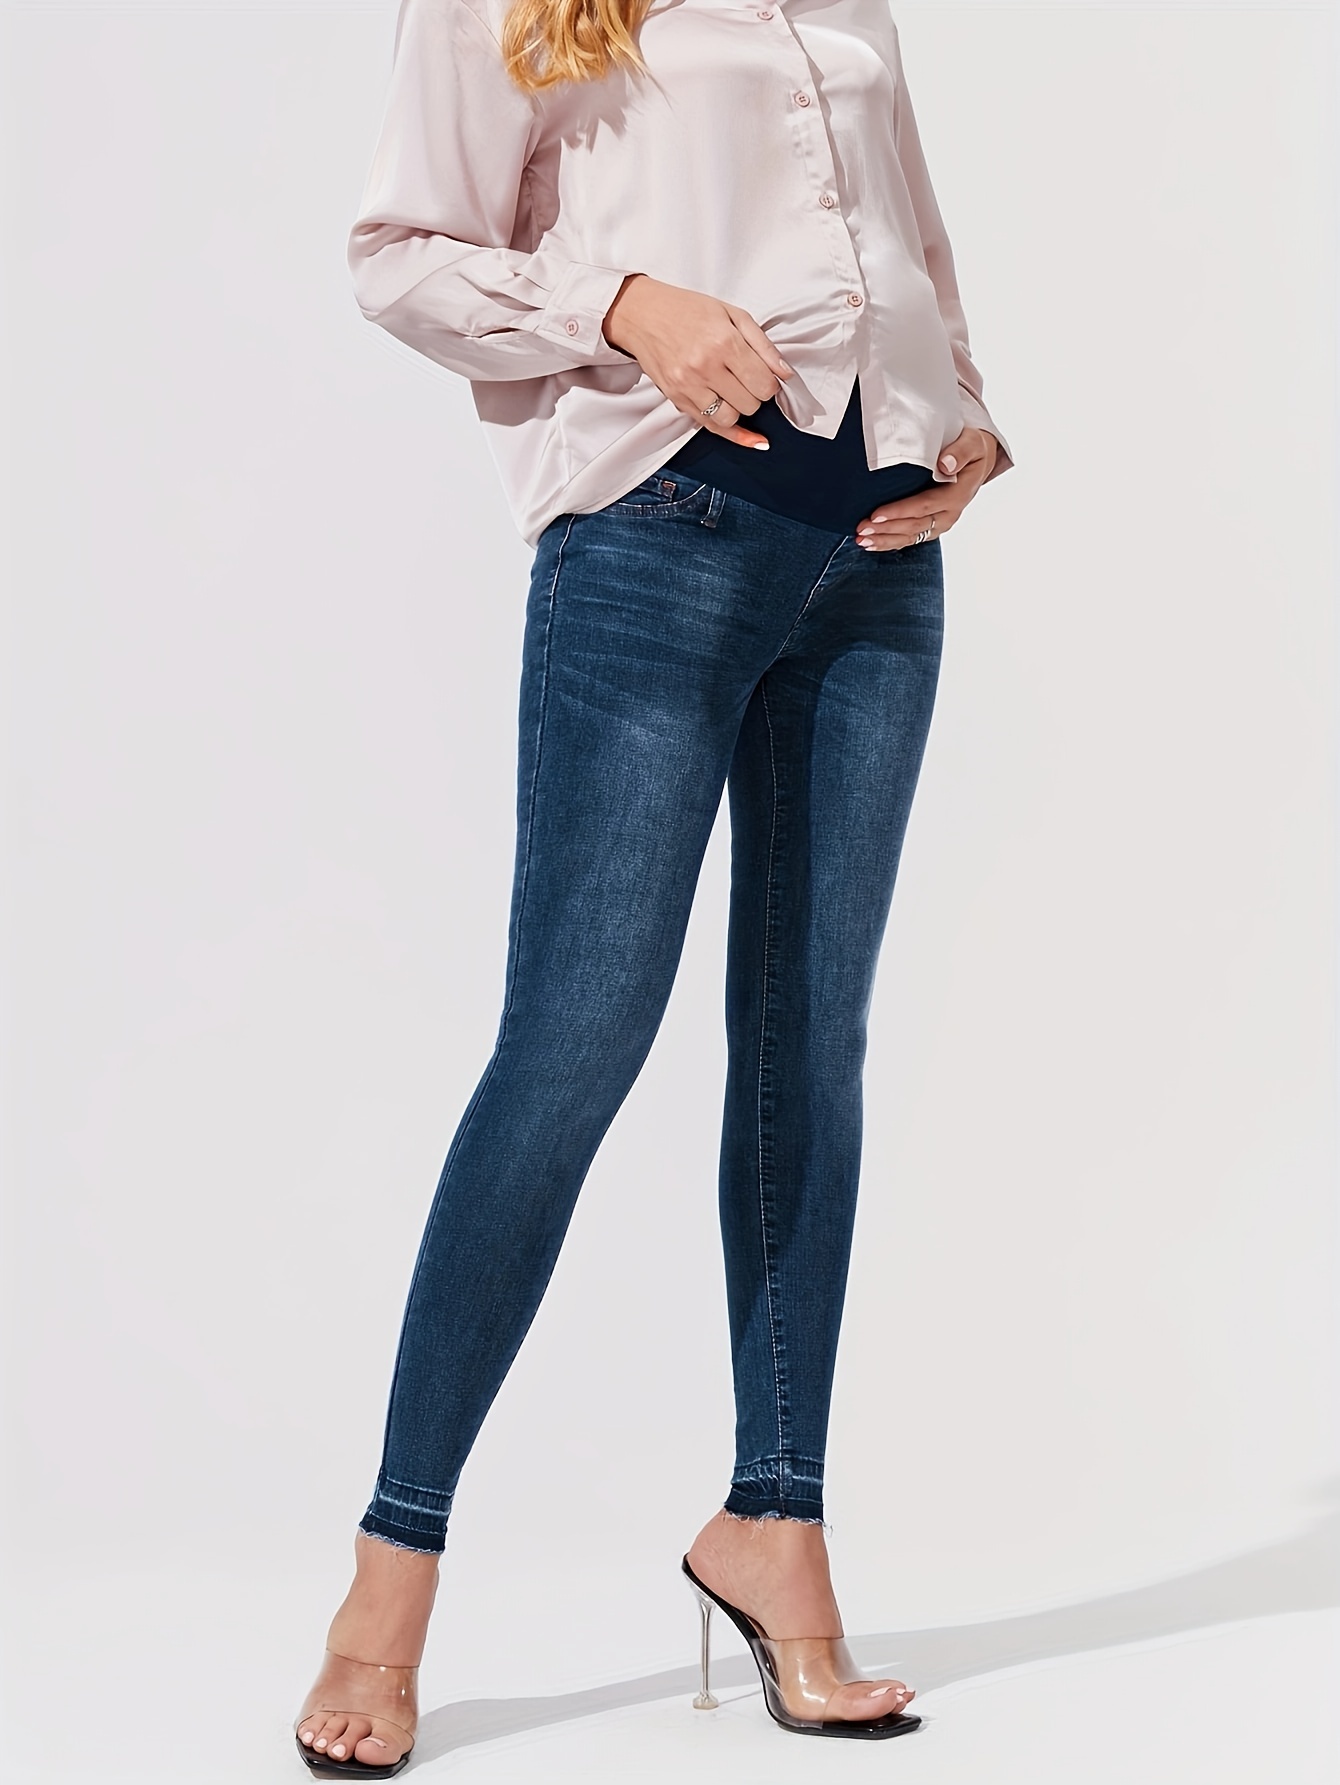 Женские джинсы купить - совместные покупки